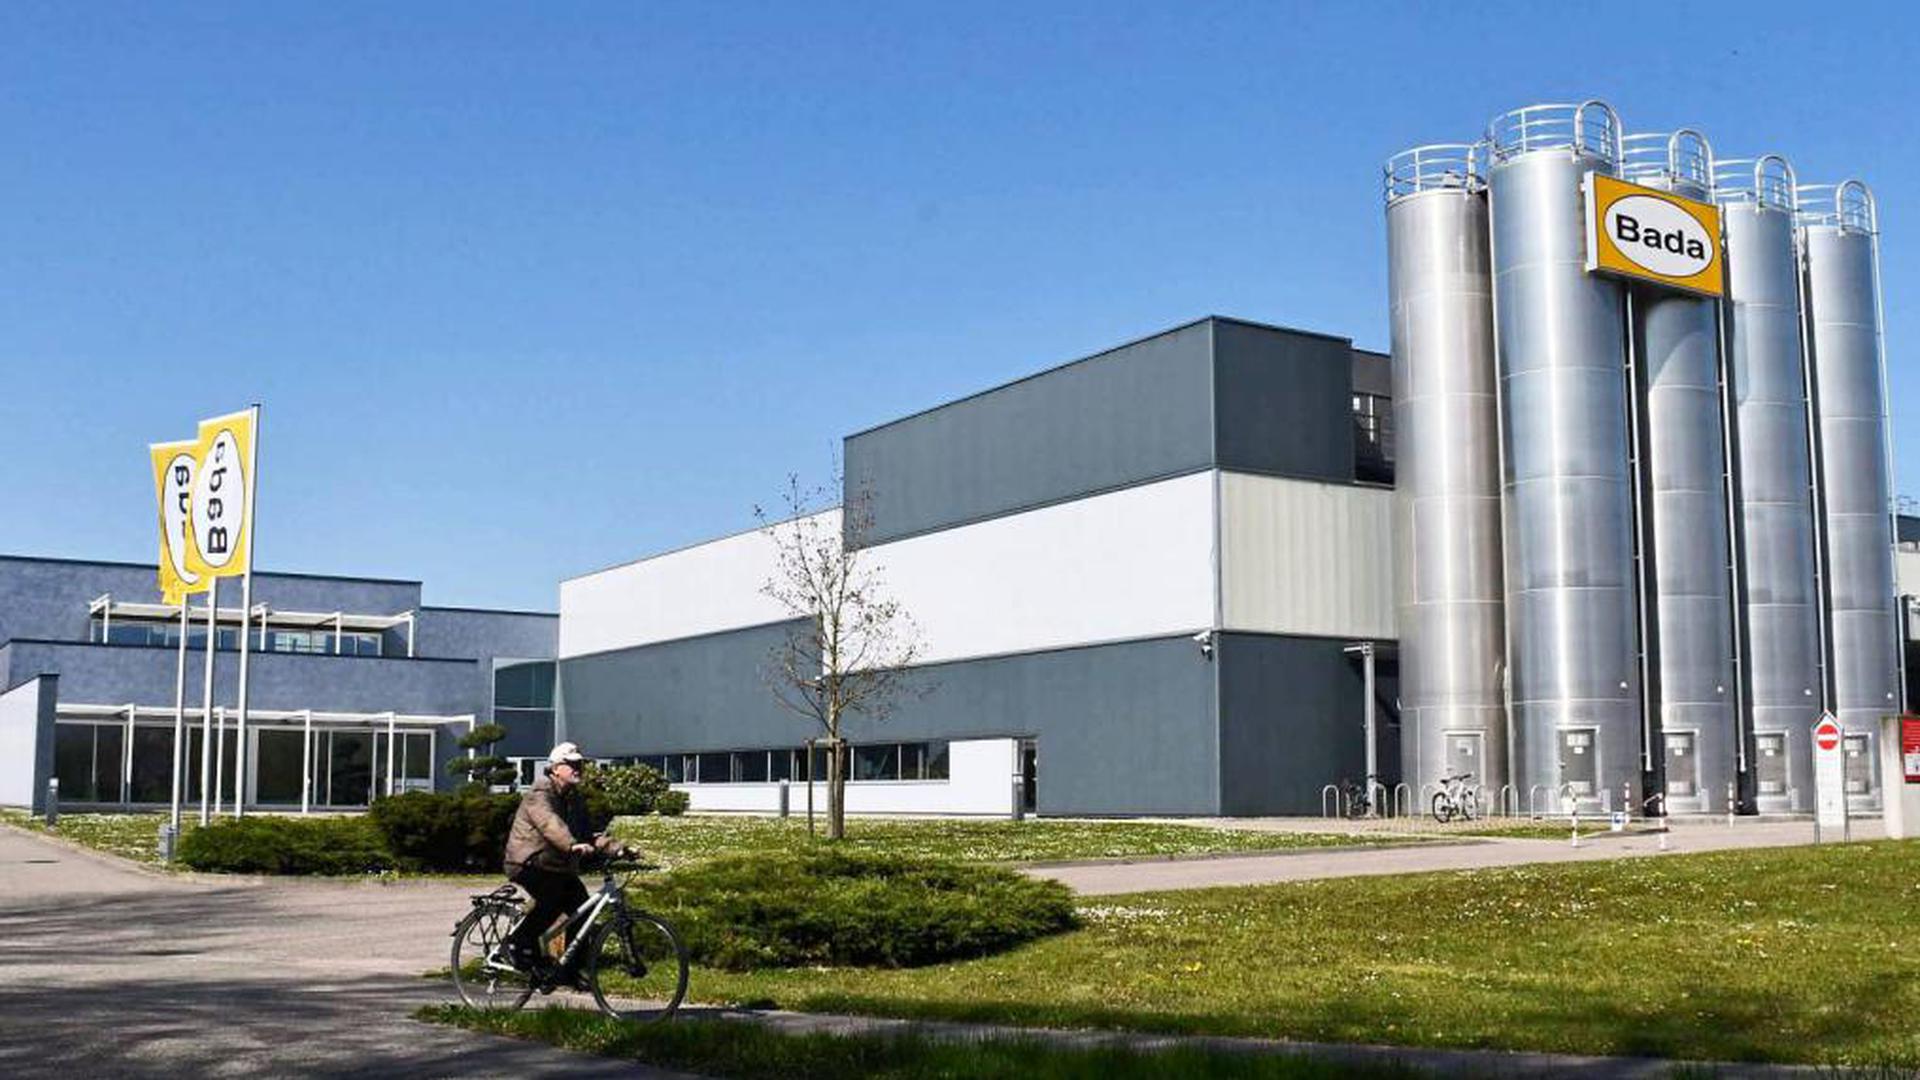 Die Bada AG fertigt seit 1998 technische Thermoplaste und thermoplastische Elastomere. Als „noch zufriedenstellend“ bezeichnet Geschäftsführer Andreas Schettler die Lage des Unternehmens.